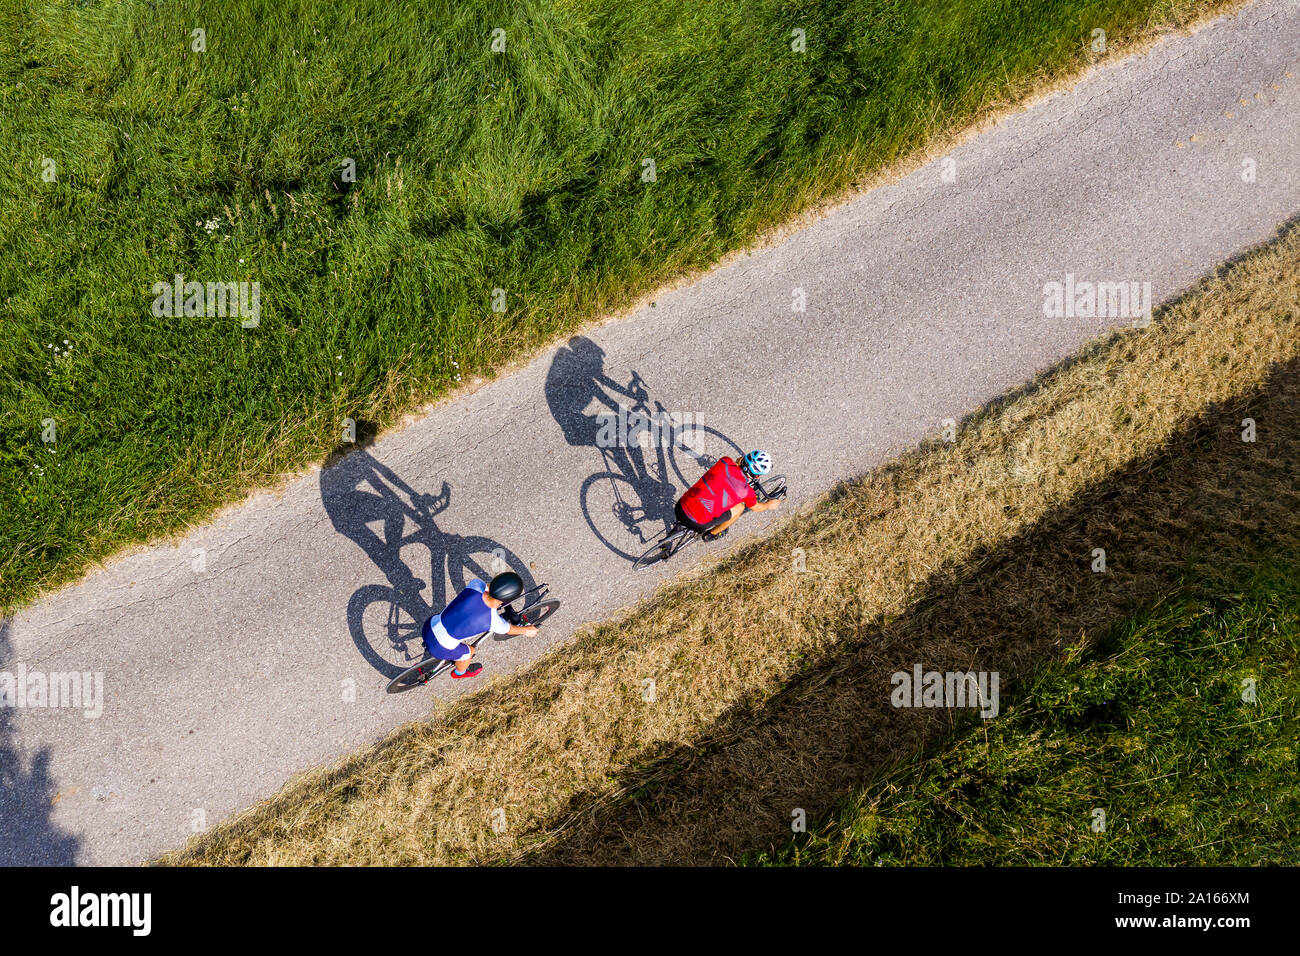 Triathleten Reiten Fahrrad auf Landstraße, Deutschland Stockfoto